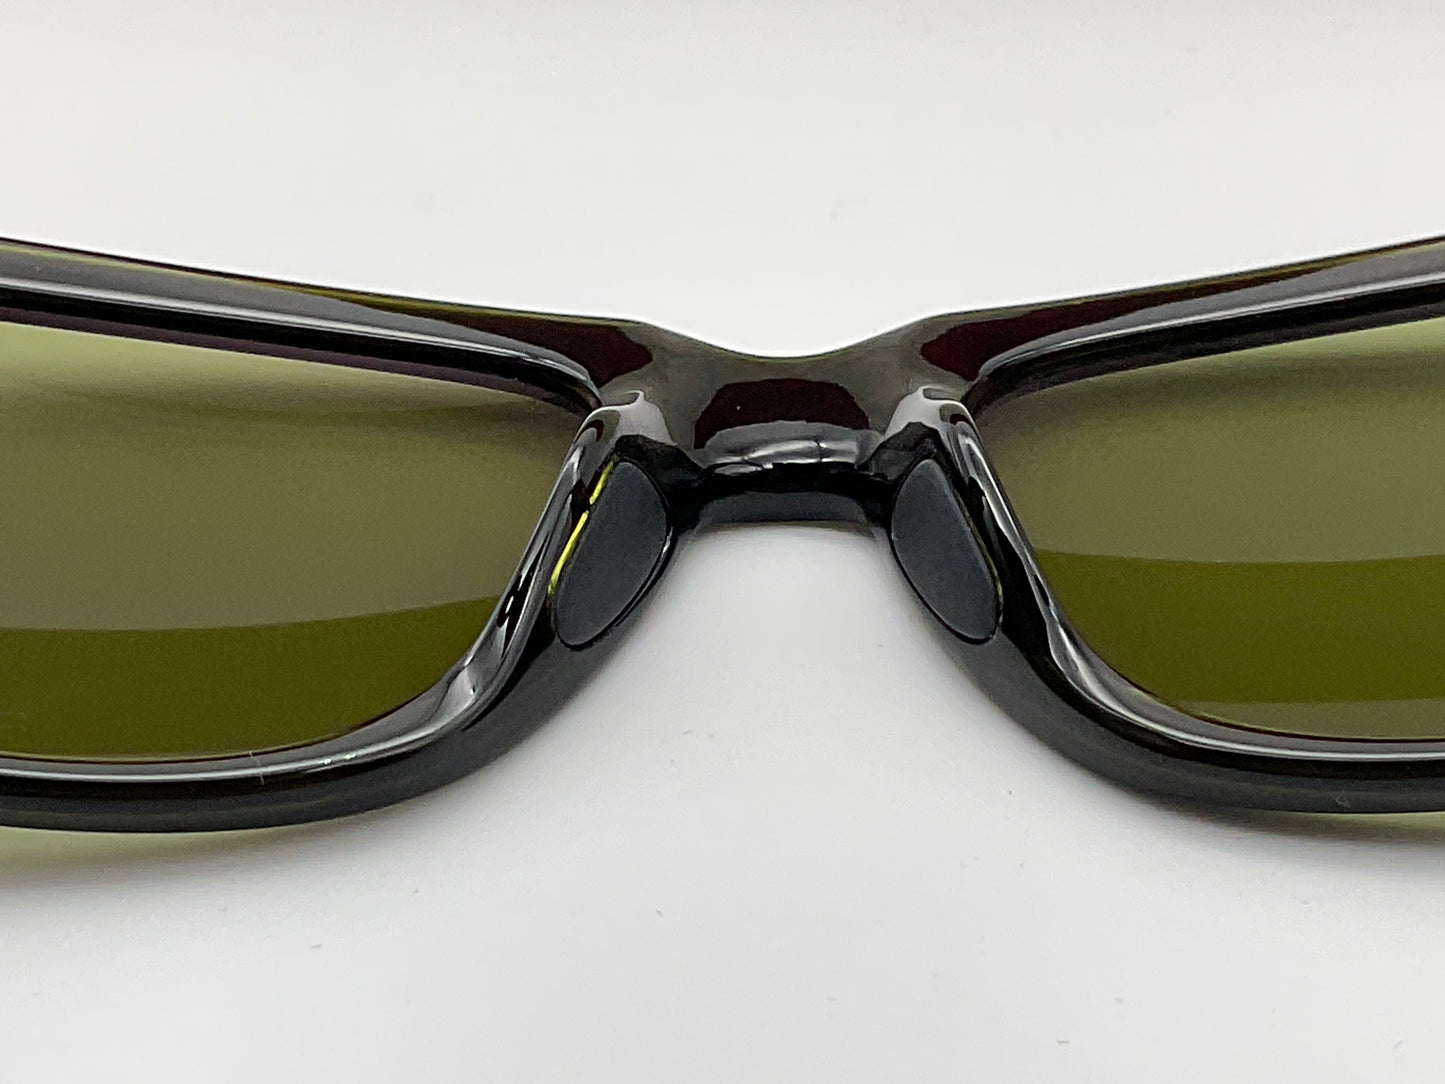 Maui Jim SNAPBACK HT730-15C Green Stripe 53mm Sunglasses Polarized Maui HT Lenses